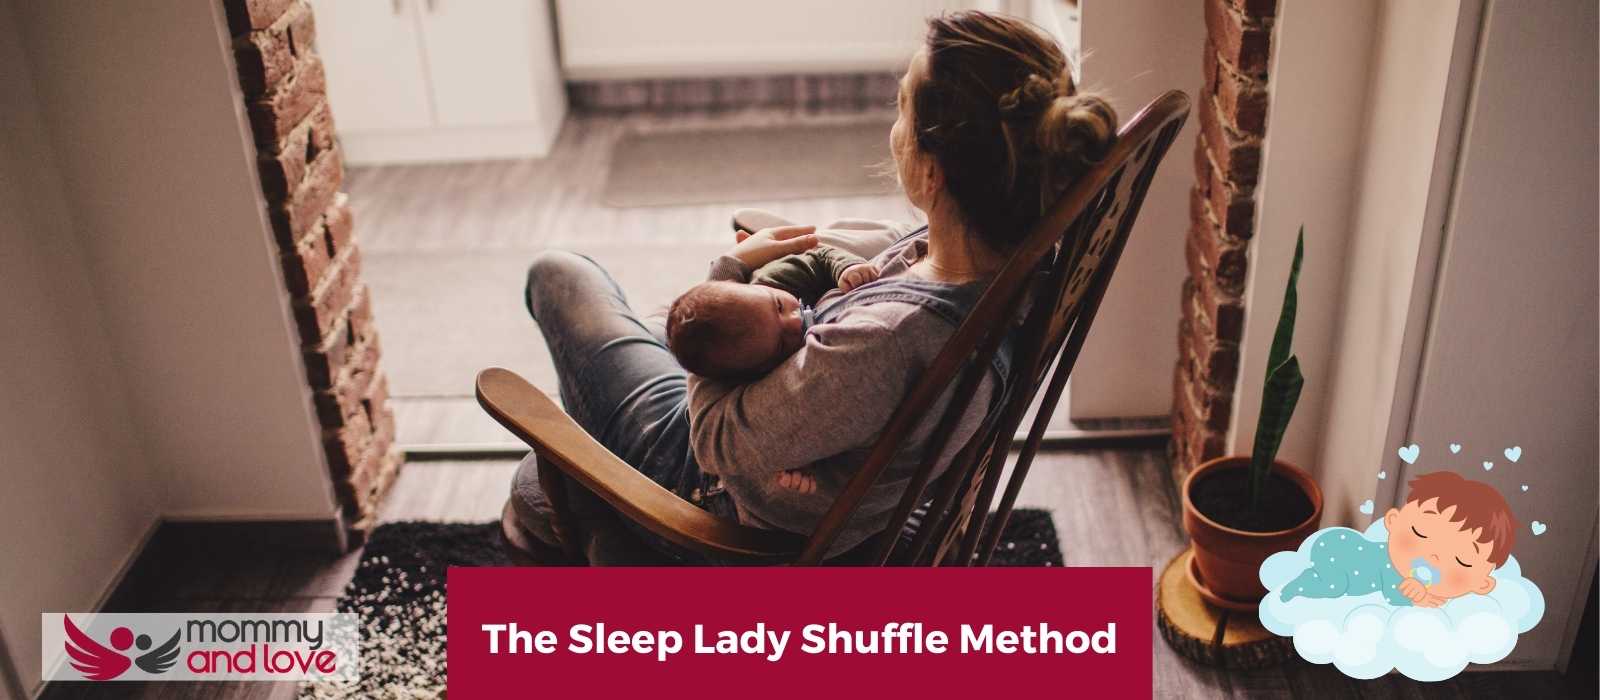 The Sleep Lady Shuffle Method